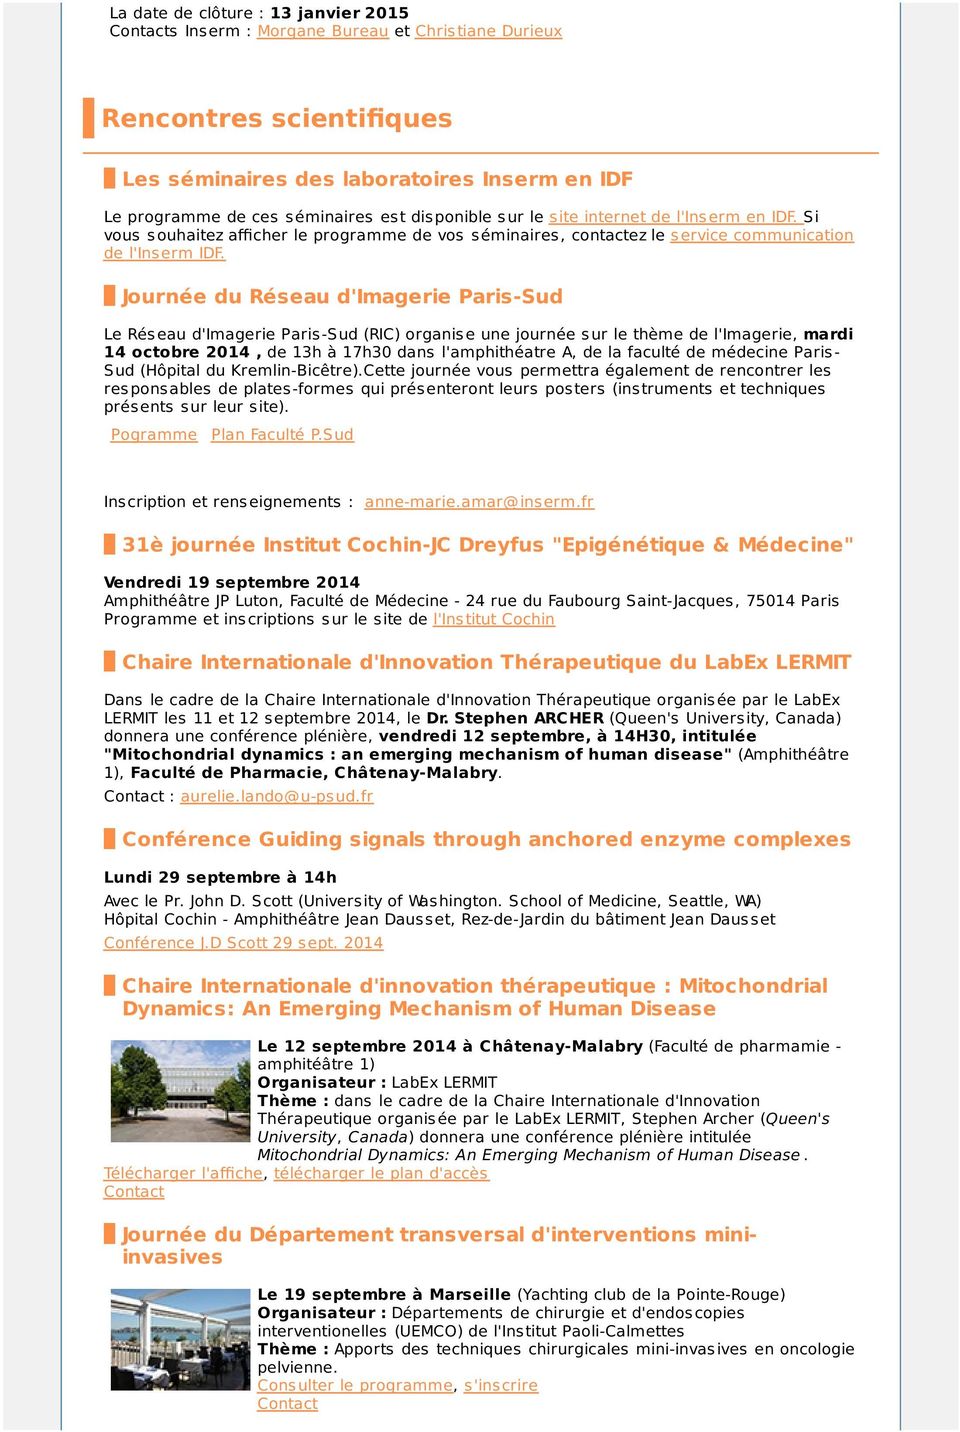 Journée du Réseau d'imagerie Paris-Sud Le Réseau d'imagerie Paris-Sud (RIC) organise une journée sur le thème de l'imagerie, mardi 14 octobre 2014, de 13h à 17h30 dans l'amphithéatre A, de la faculté